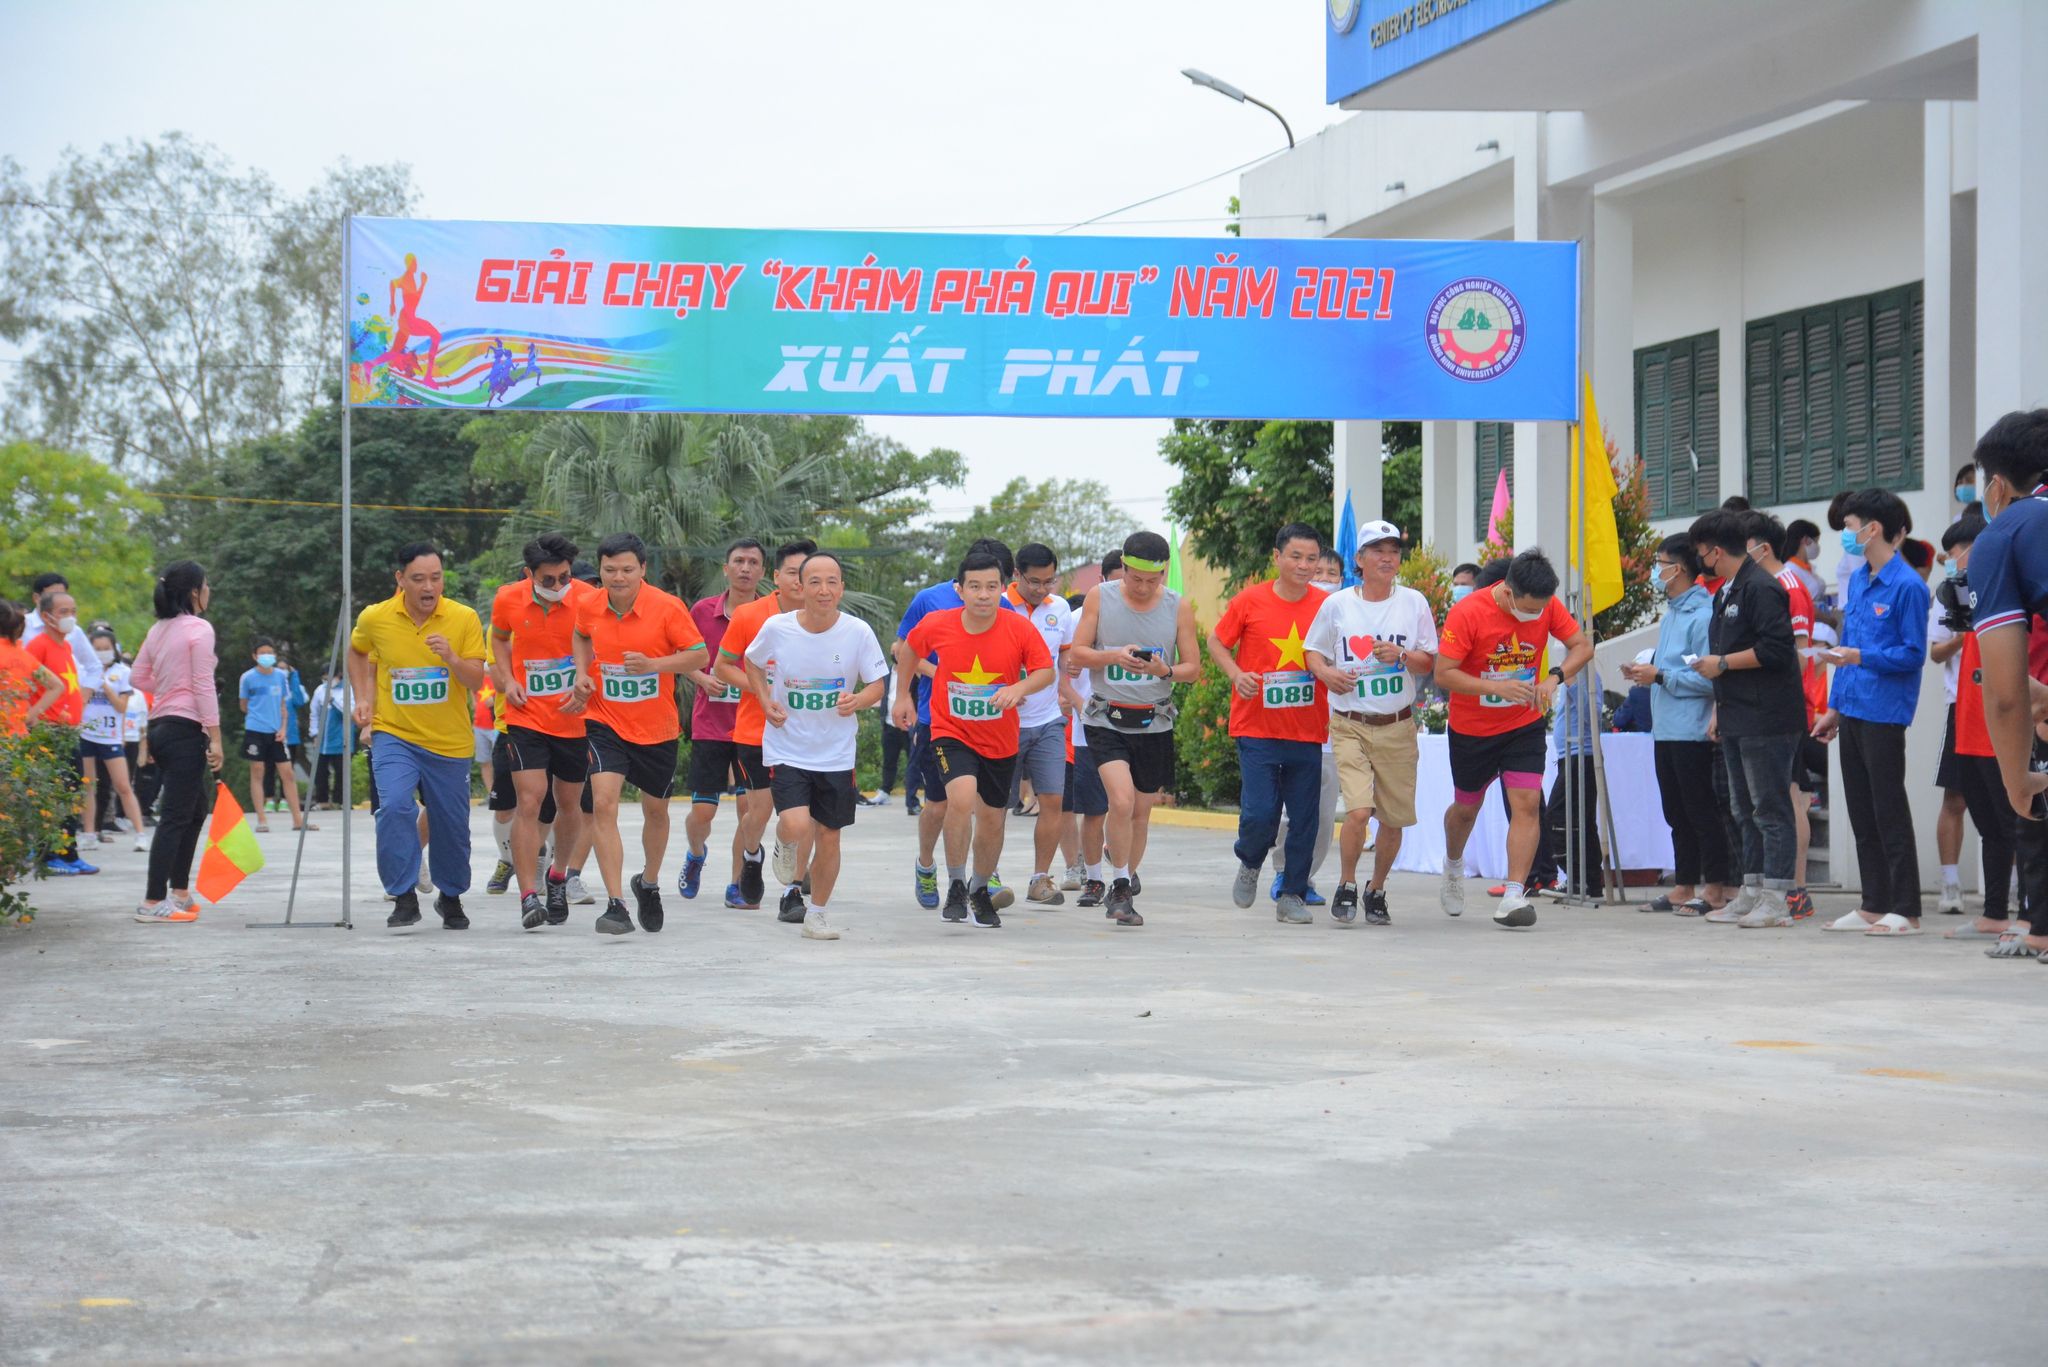 Công đoàn trường ĐH Công nghiệp Quảng Ninh tổ chức thành công Giải chạy “Khám phá QUI” năm 2021 thành công tốt đẹp